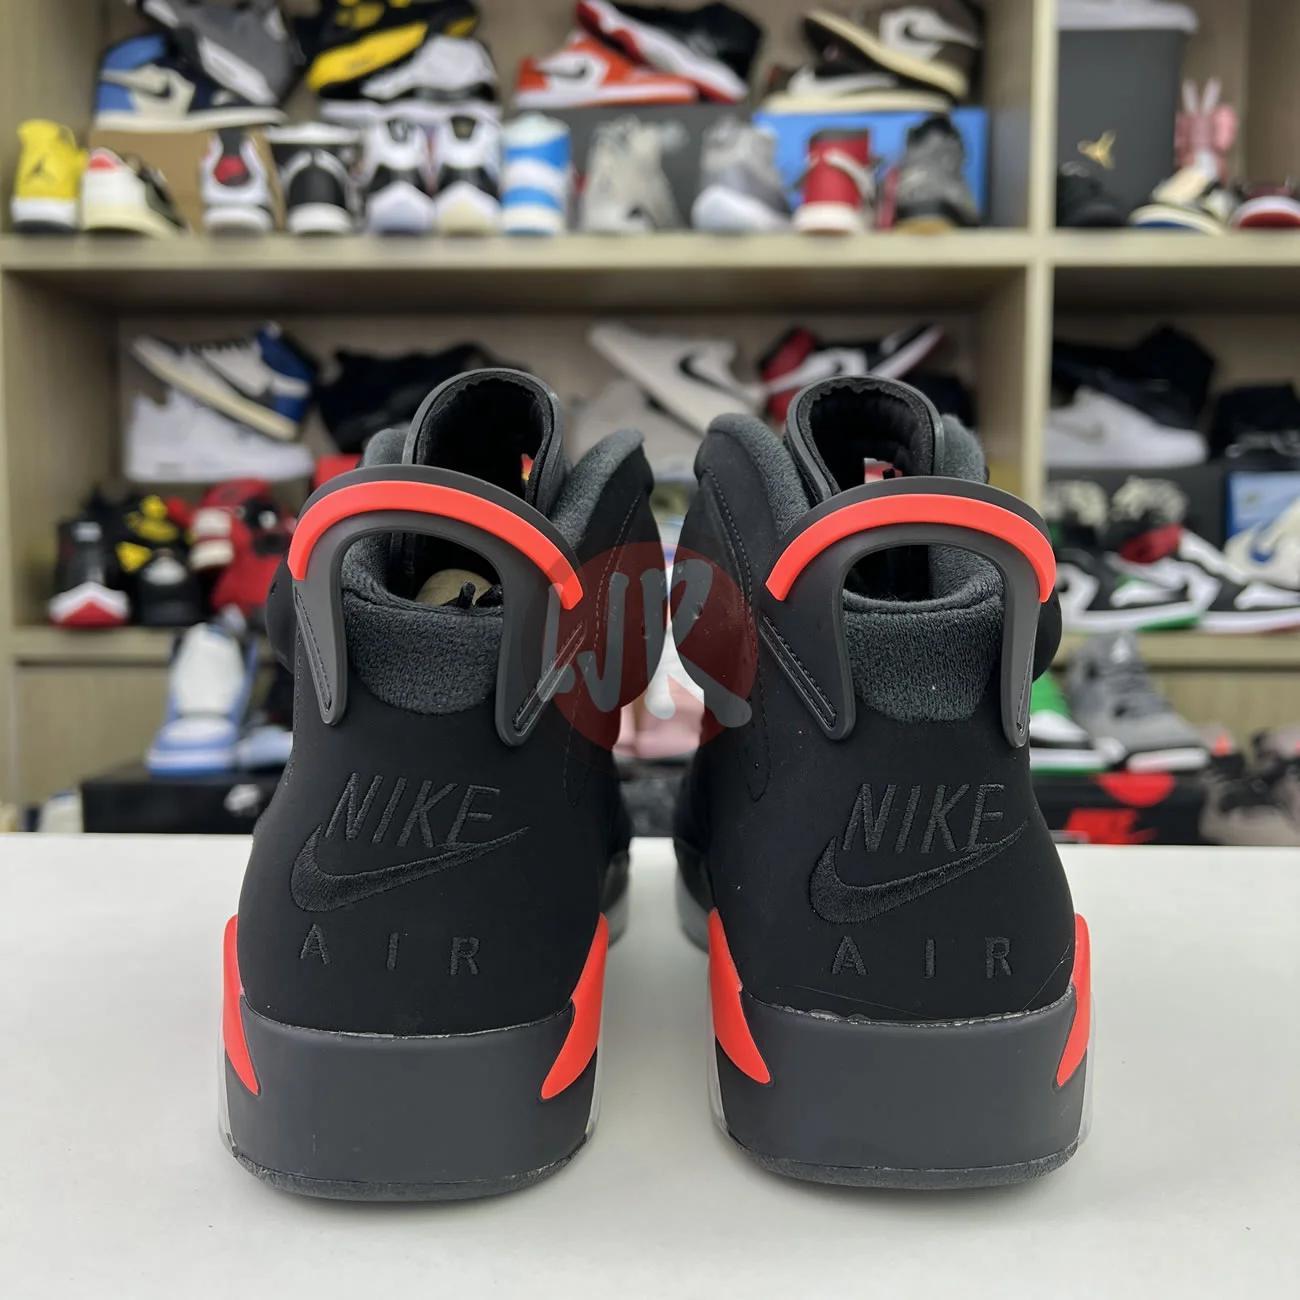 Air Jordan 6 Retro Black Infrared 2019 384664 060 Ljr Sneakers (4) - bc-ljr.net